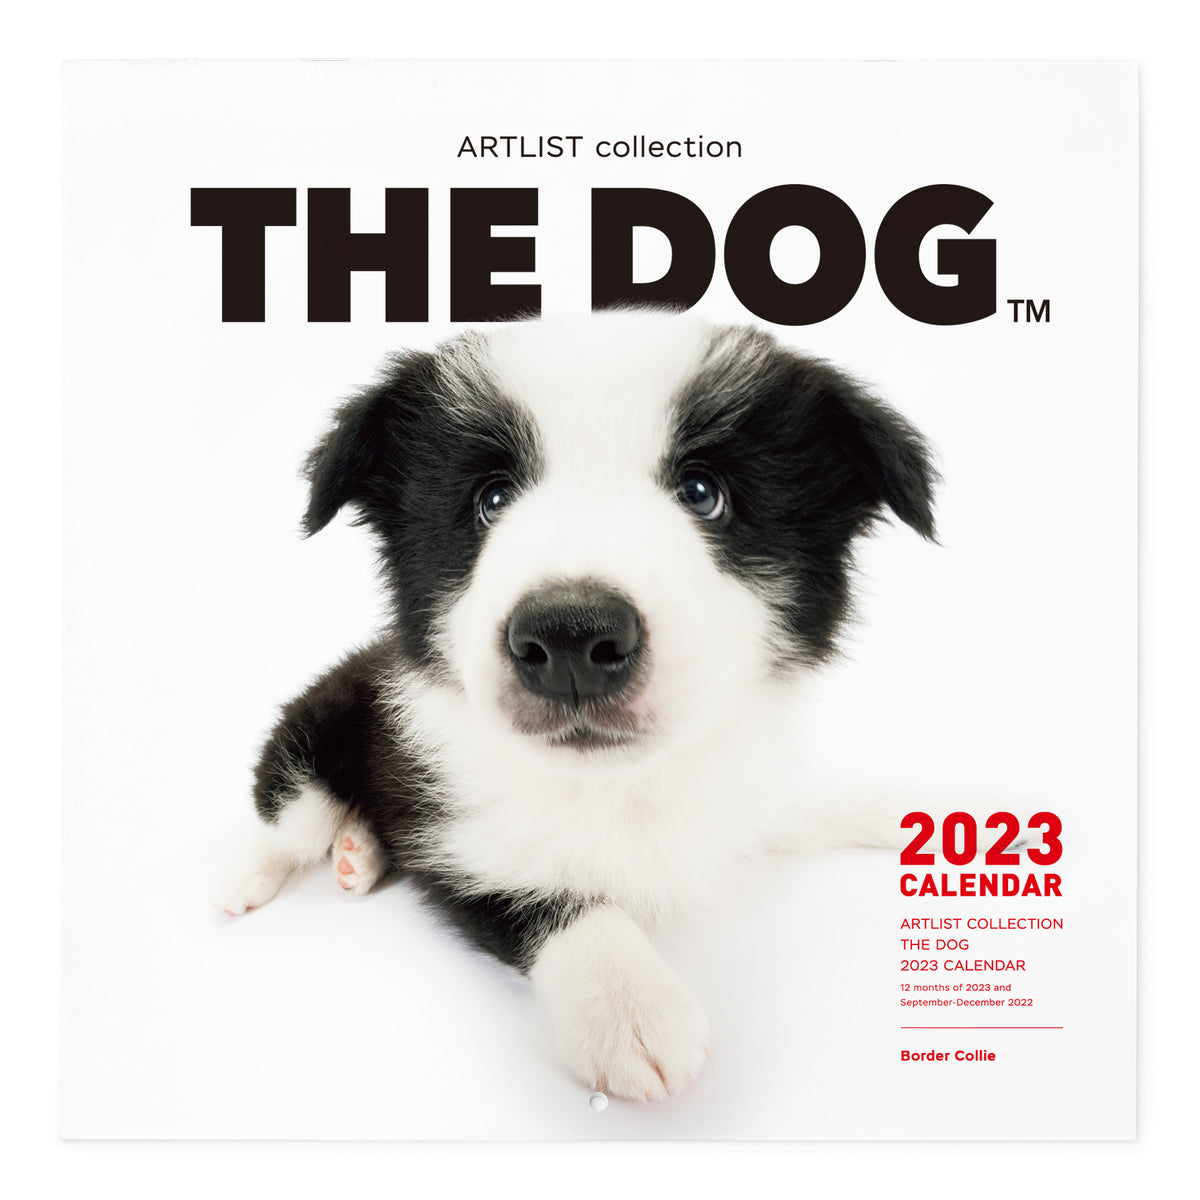 The Dog 23年 カレンダー 大判サイズ ボーダーコリー The Dog Store The Dog公式オンラインショップ